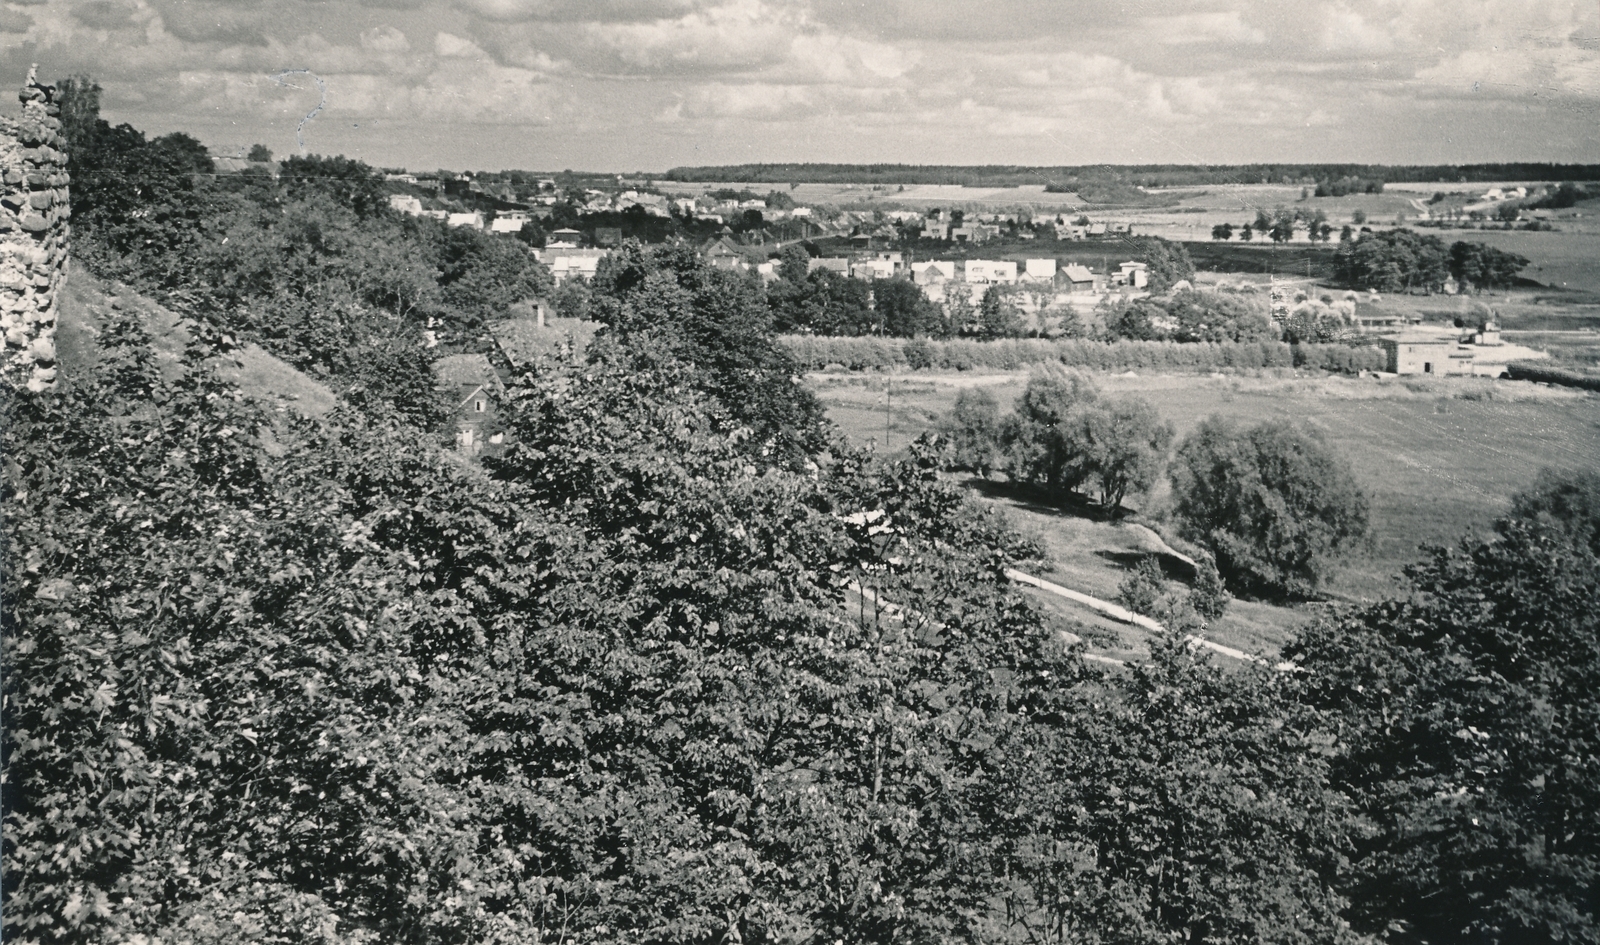 foto, Viljandi, lossimäed, II Kirsimägi, u 1960, foto A. Kiisla?